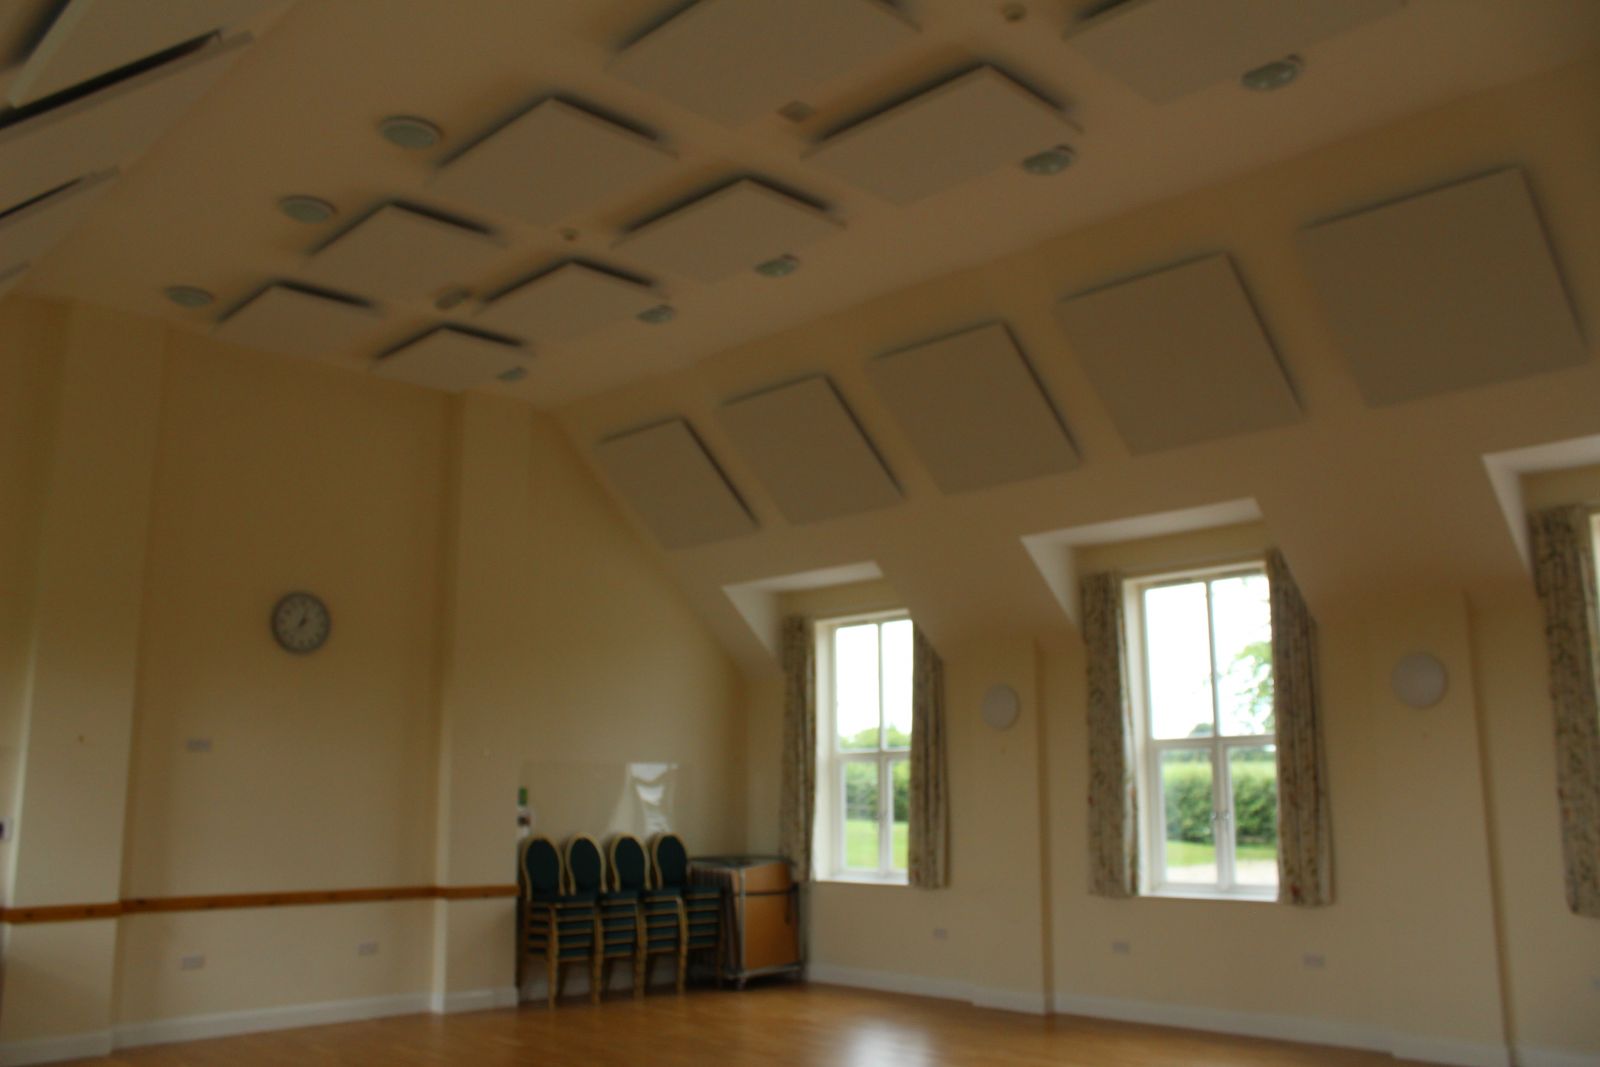 Sonata Vario on Village Hall Ceiling